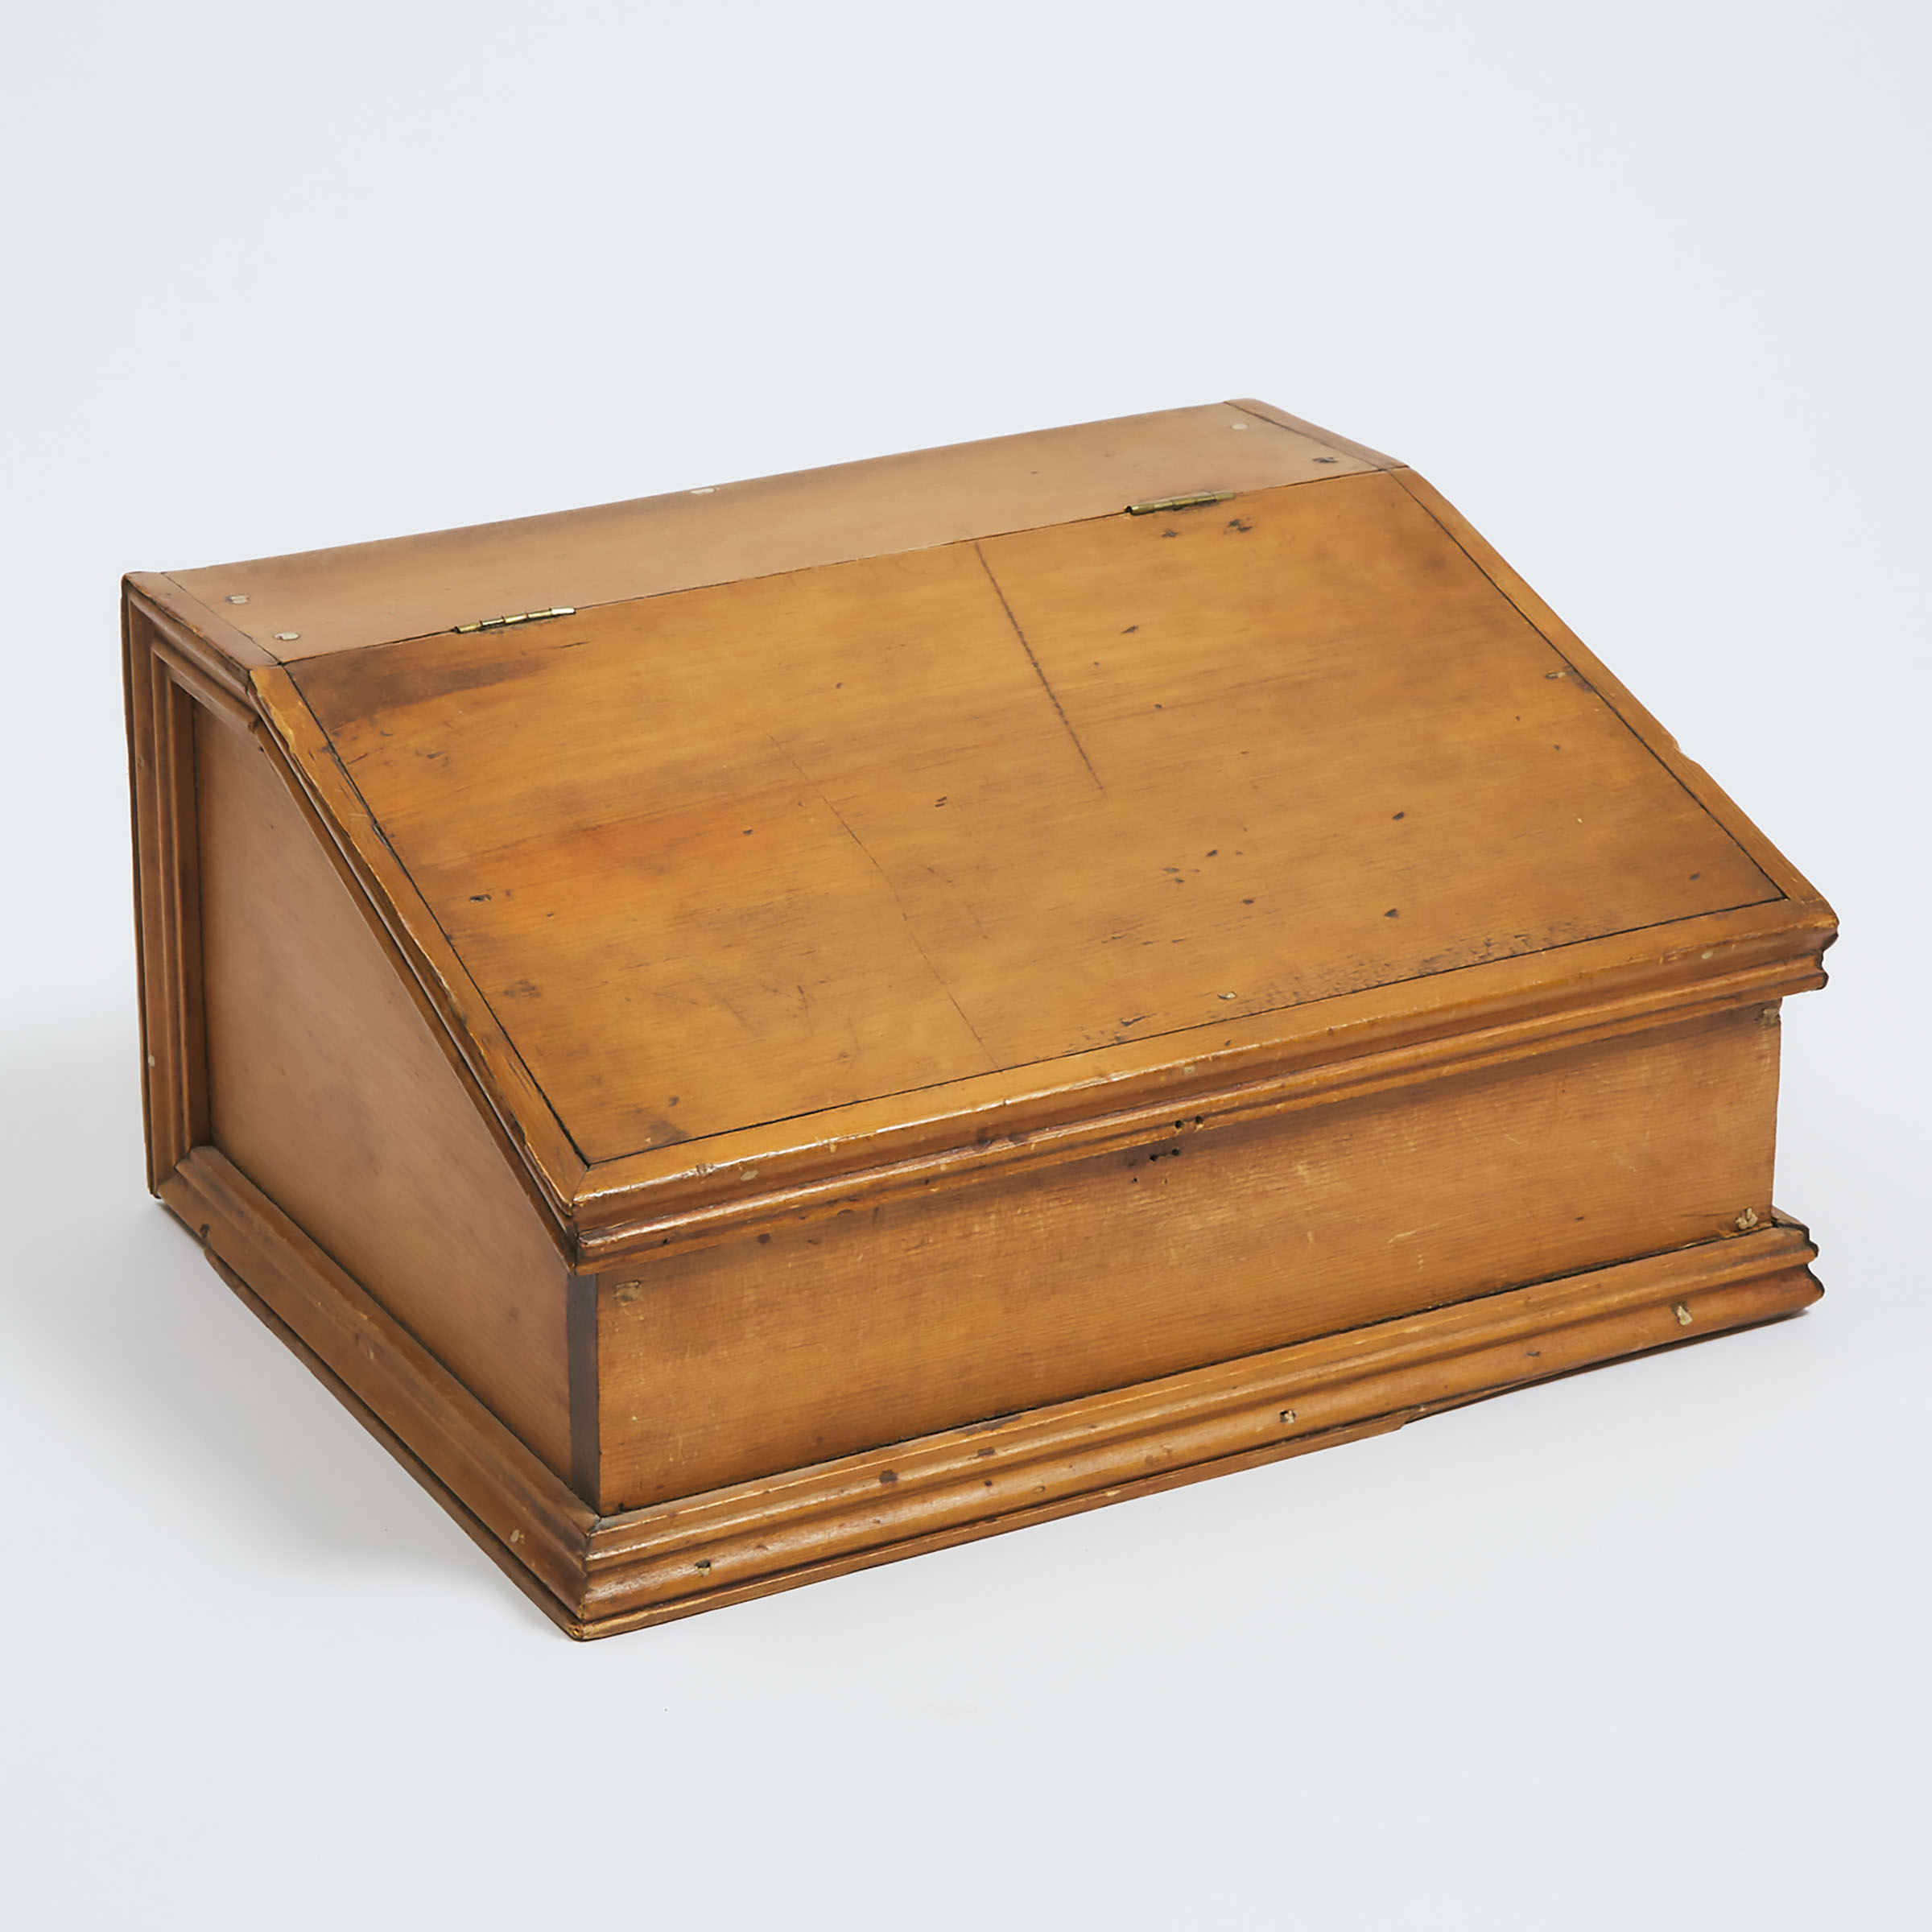 Quebec Pine Document Box, c.1850